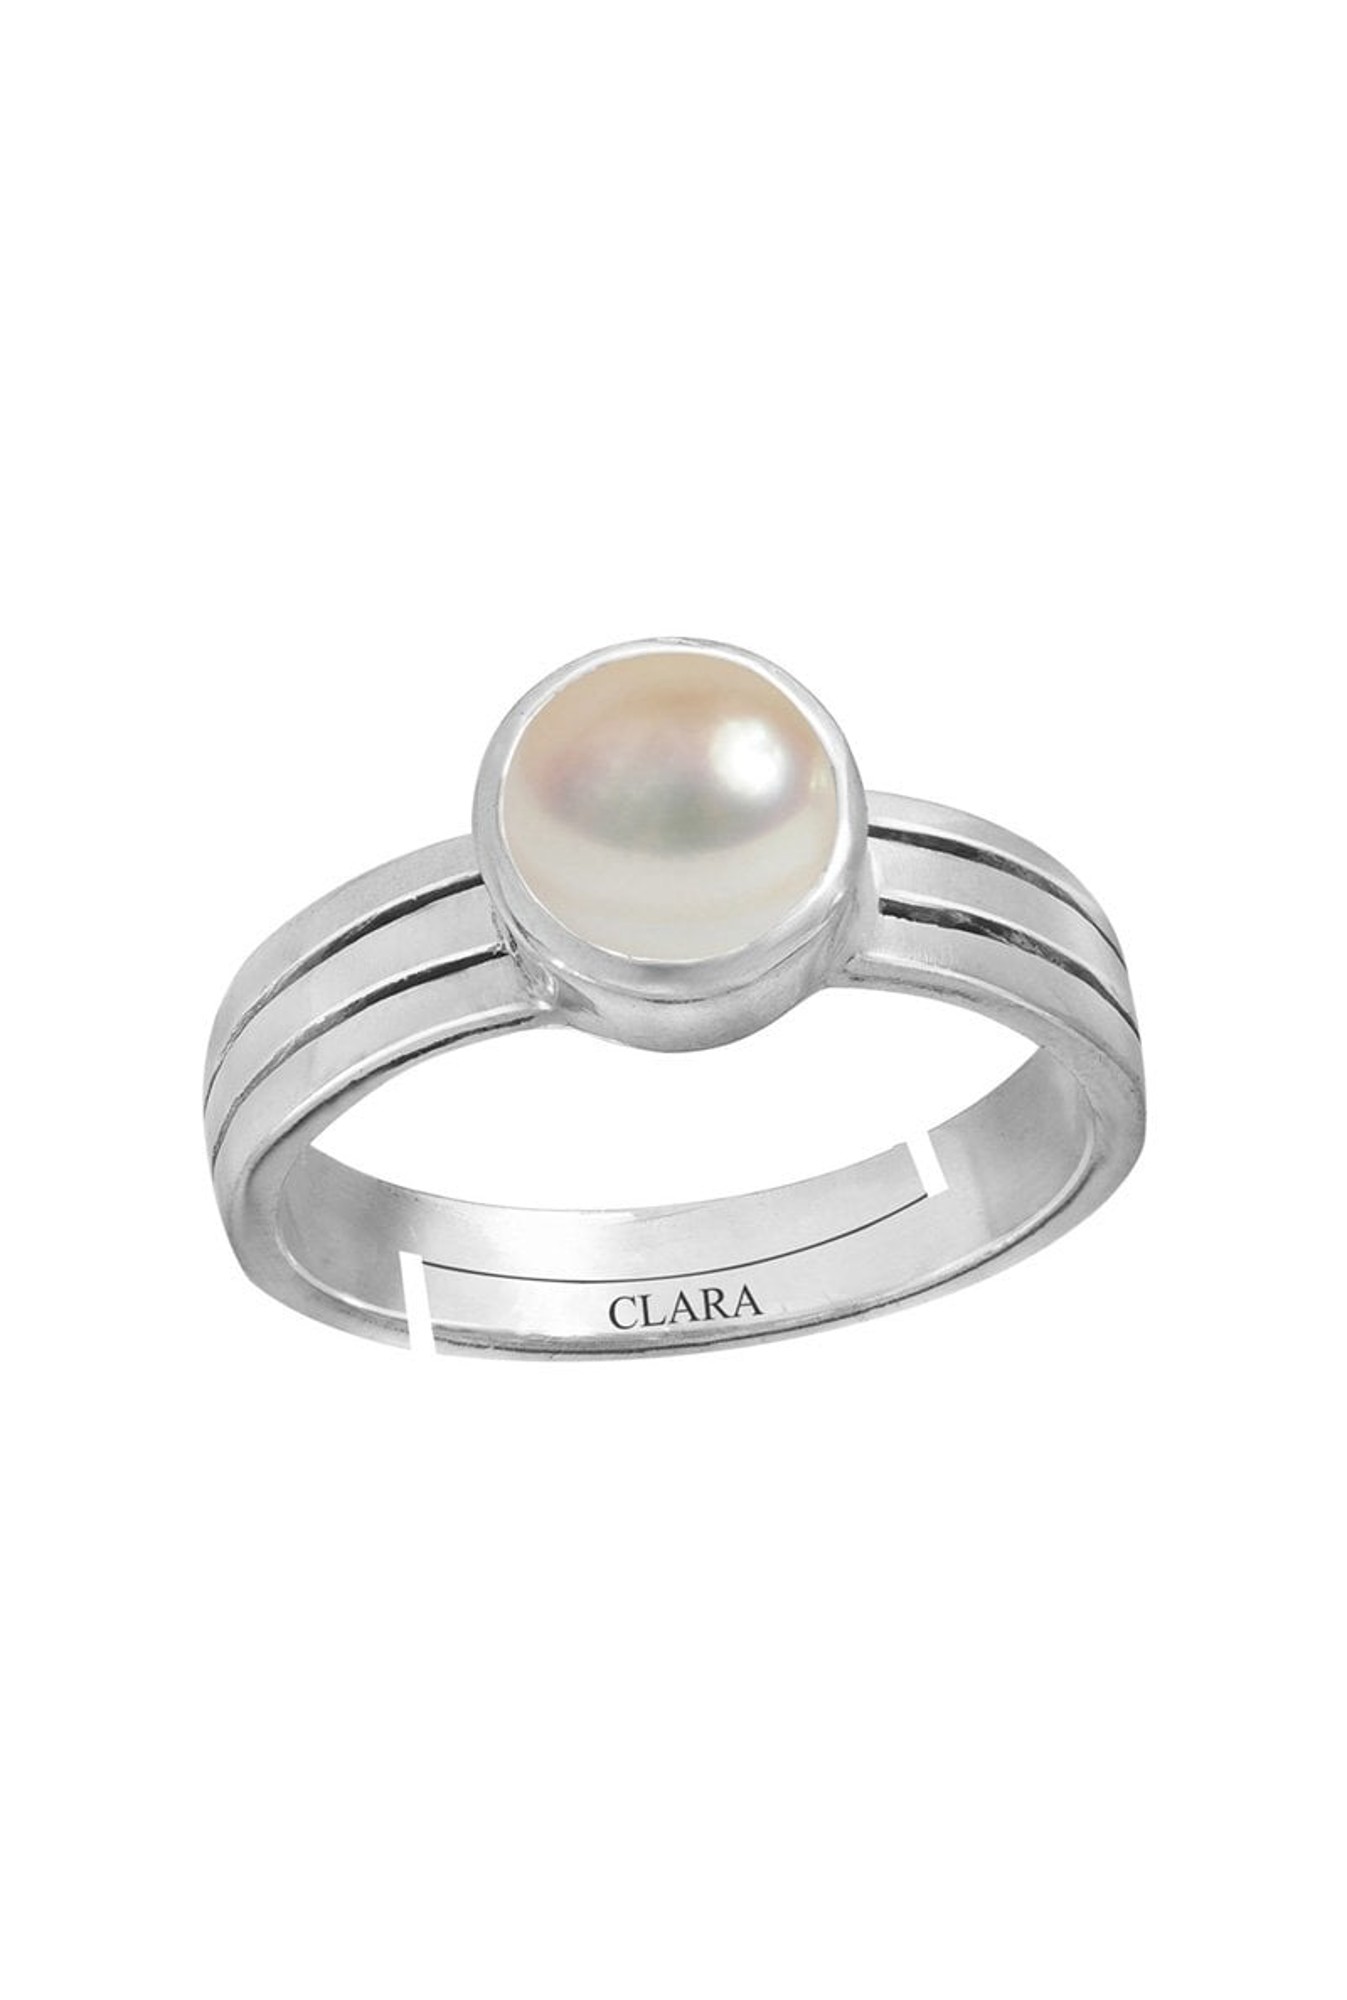 RATAN BAZAAR Pearl Stone ring Original Pearl 6.00 ratti moti stone semi  Precious & Certified for men & women Stone Pearl Silver Plated Ring Price  in India - Buy RATAN BAZAAR Pearl